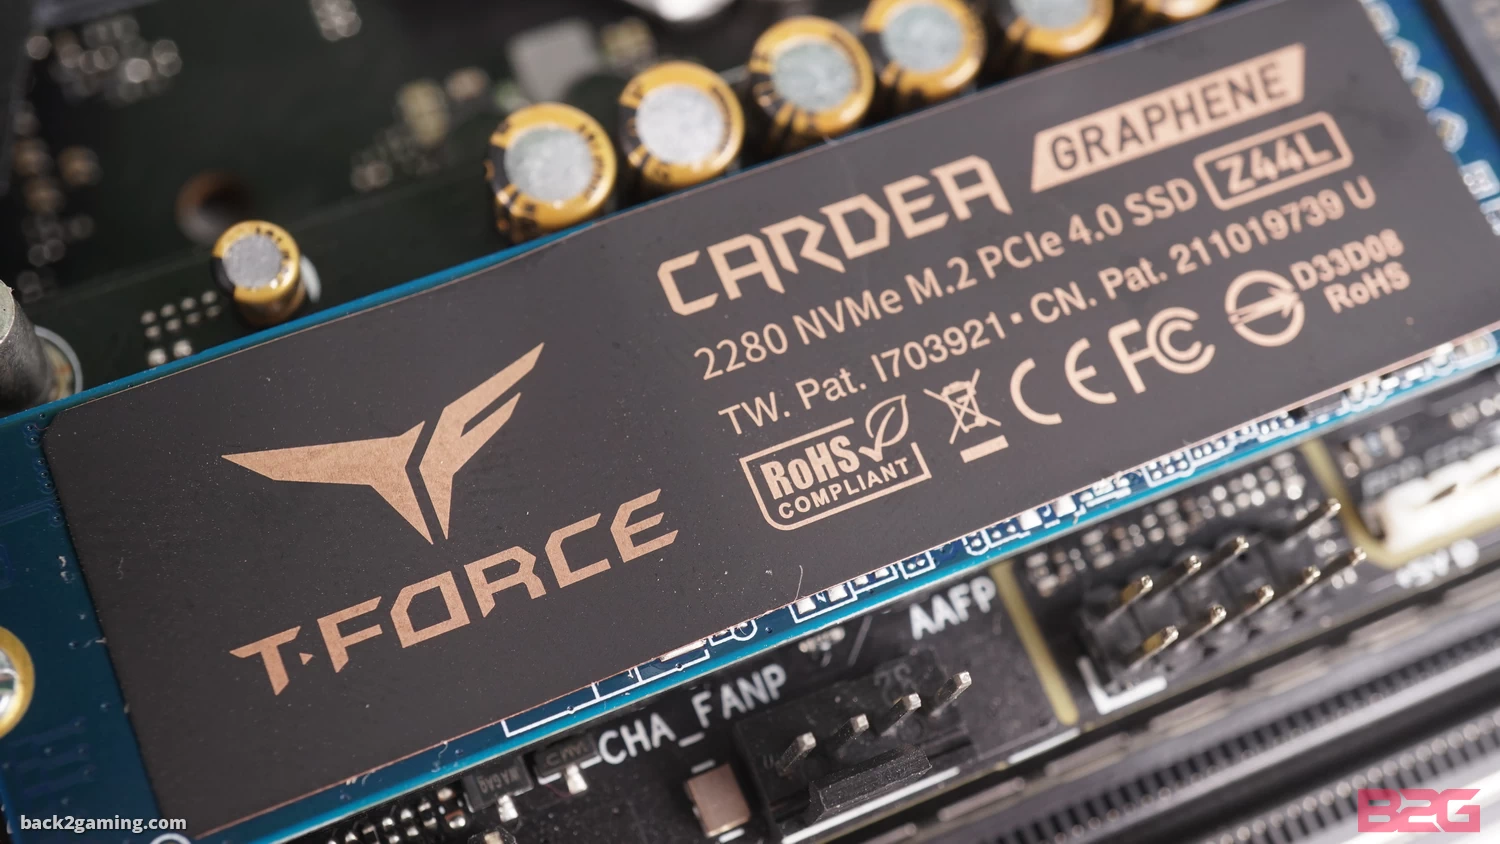 T-Force Cardea Z44L PCIe 4.0 NVMe M.2 SSD Review -